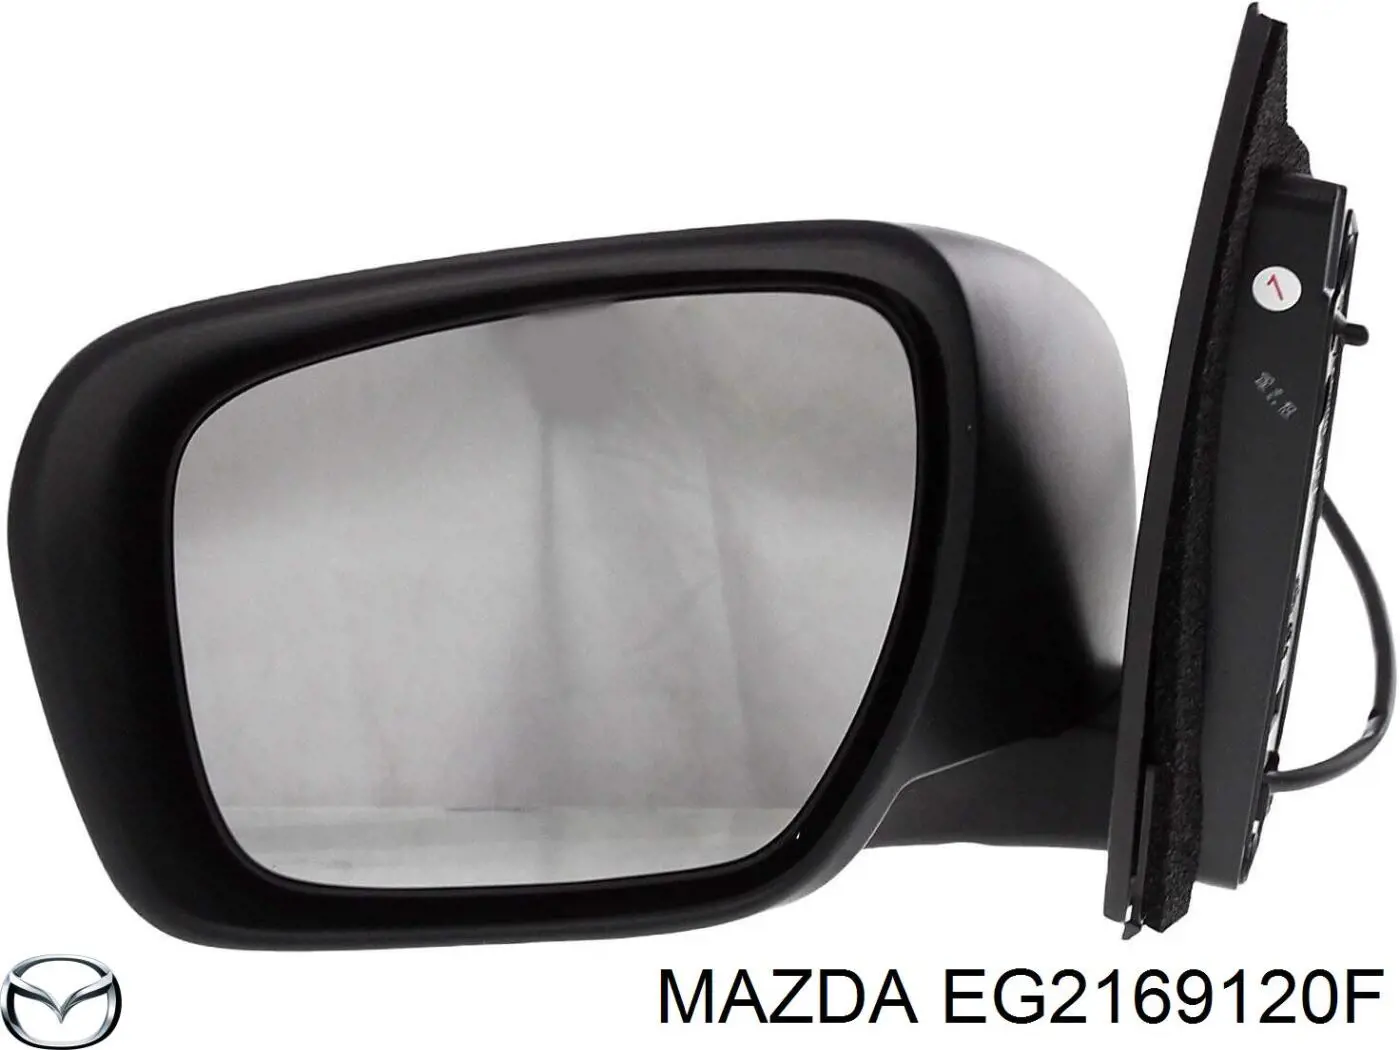 EG2169120F Mazda espejo retrovisor derecho